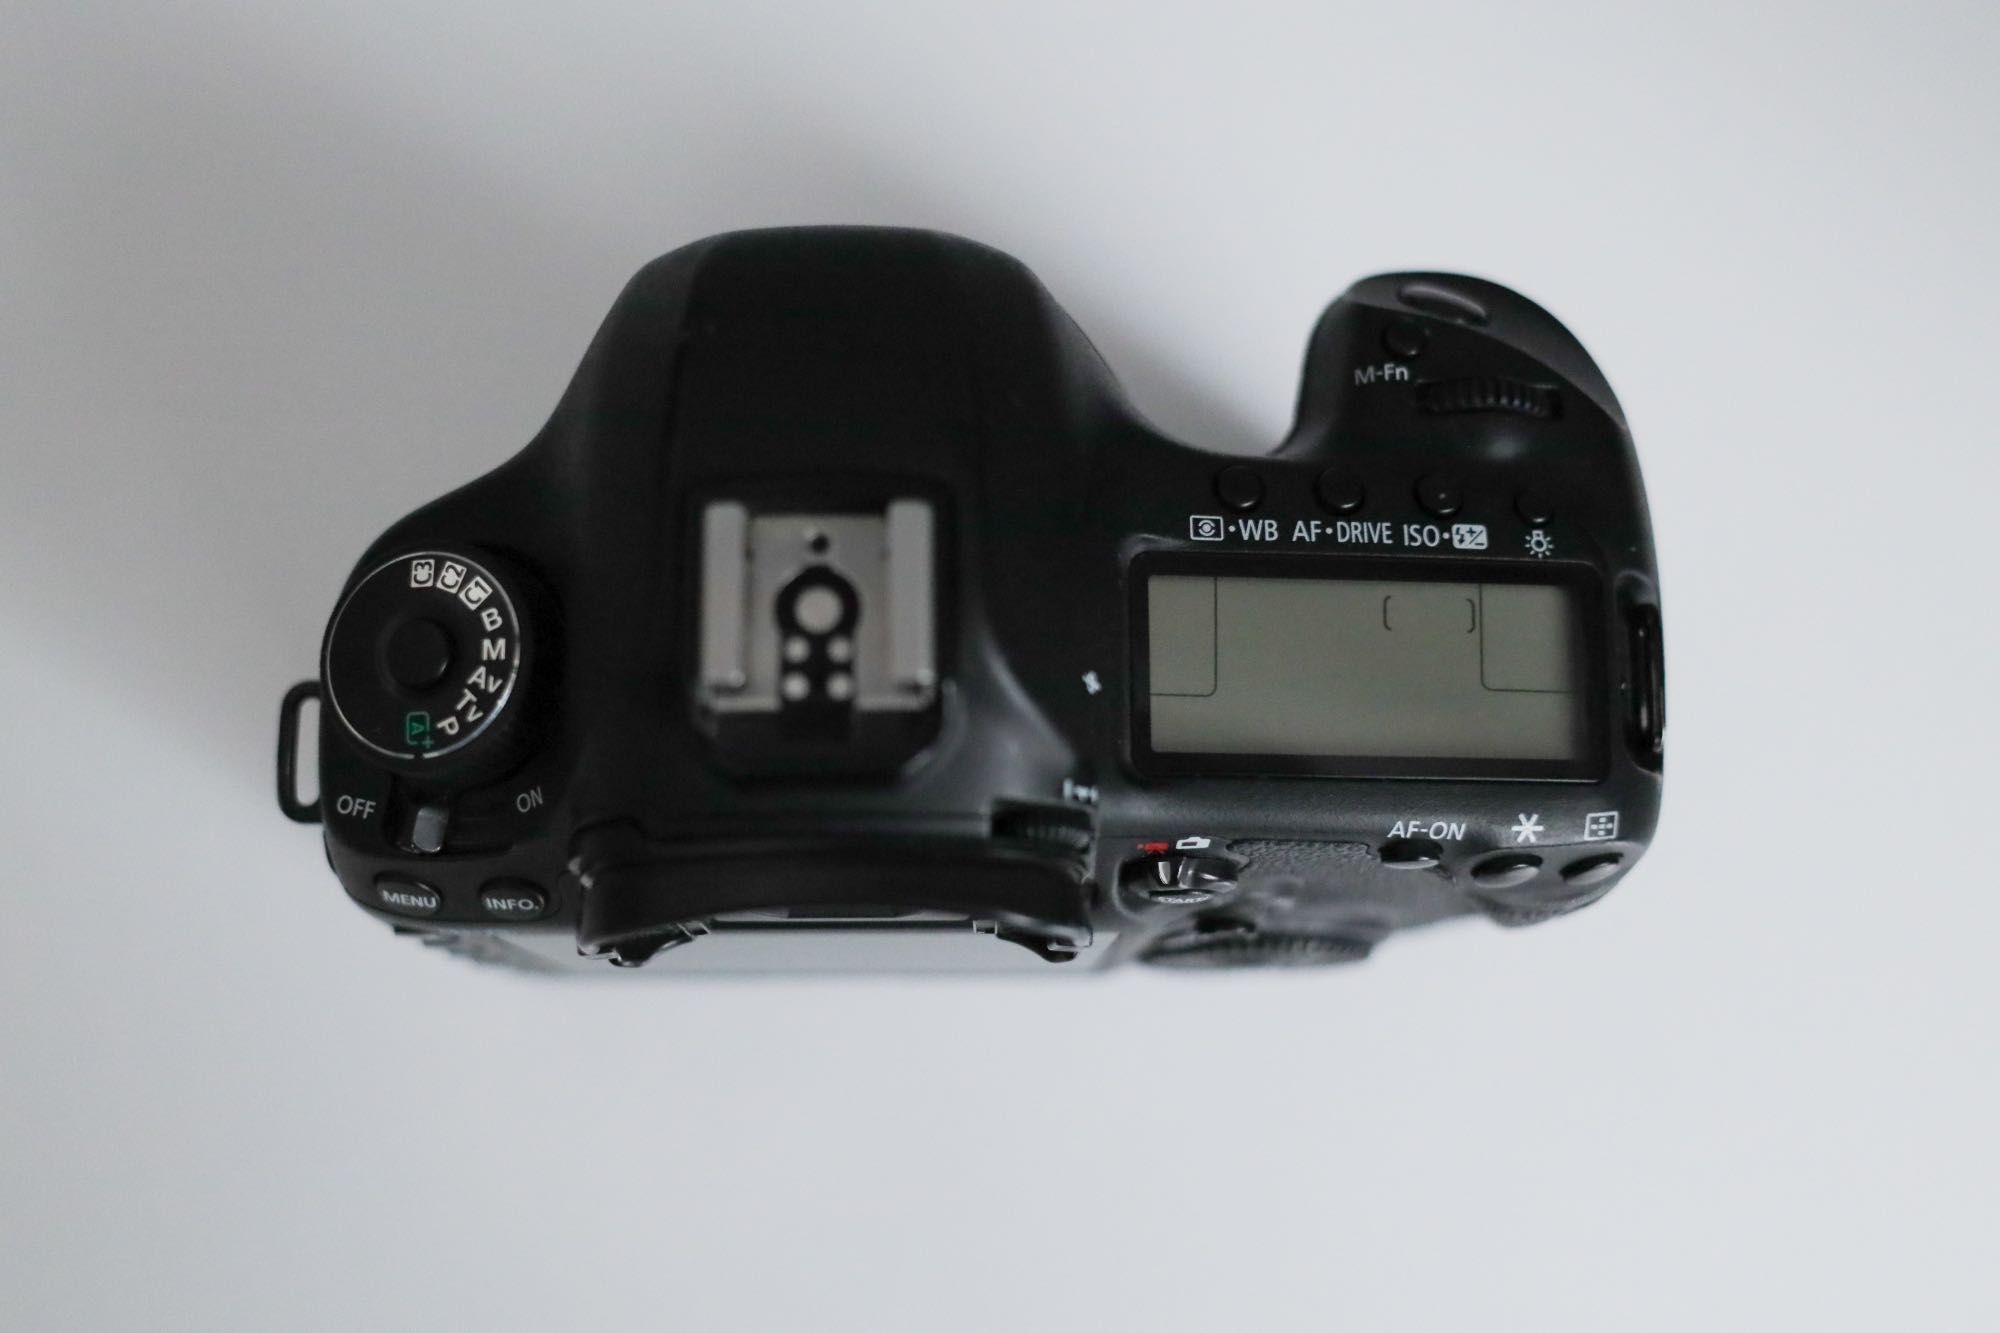 Canon 5D Mark 3 (Mark III)